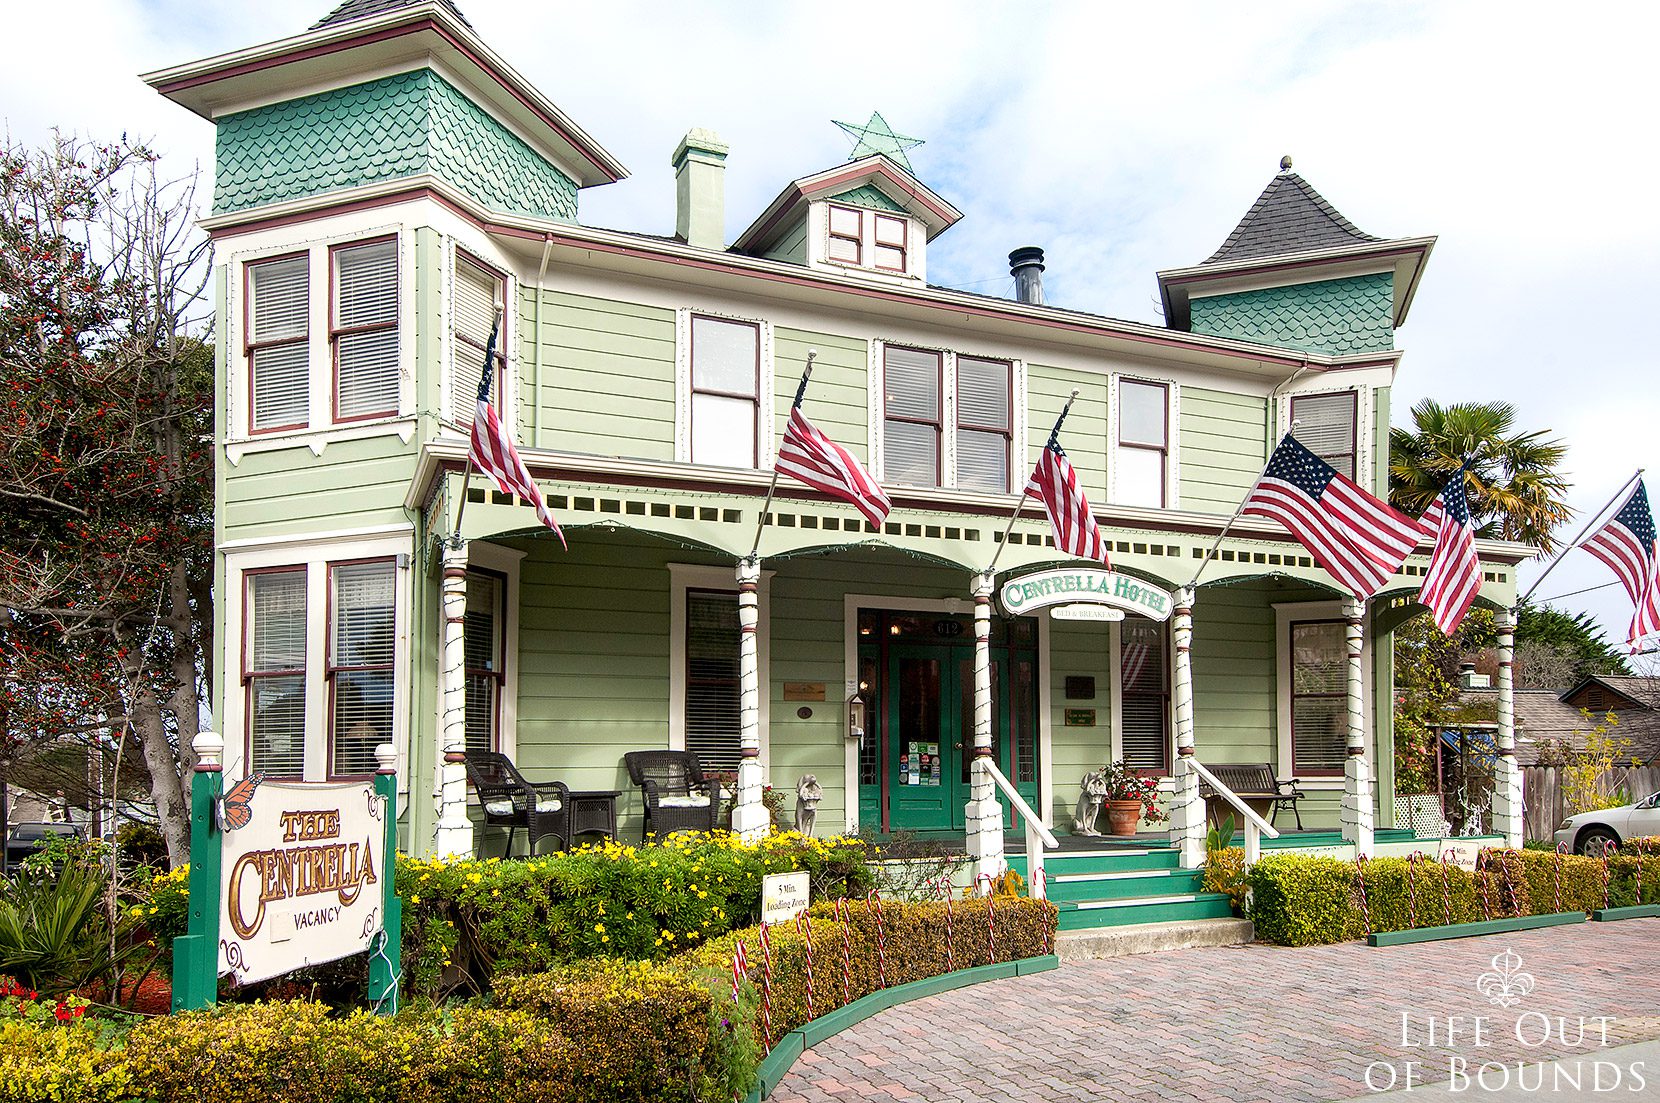 Centrella-Hotel-a-Victorian-style-BnB-in-Pacific-Grove-California